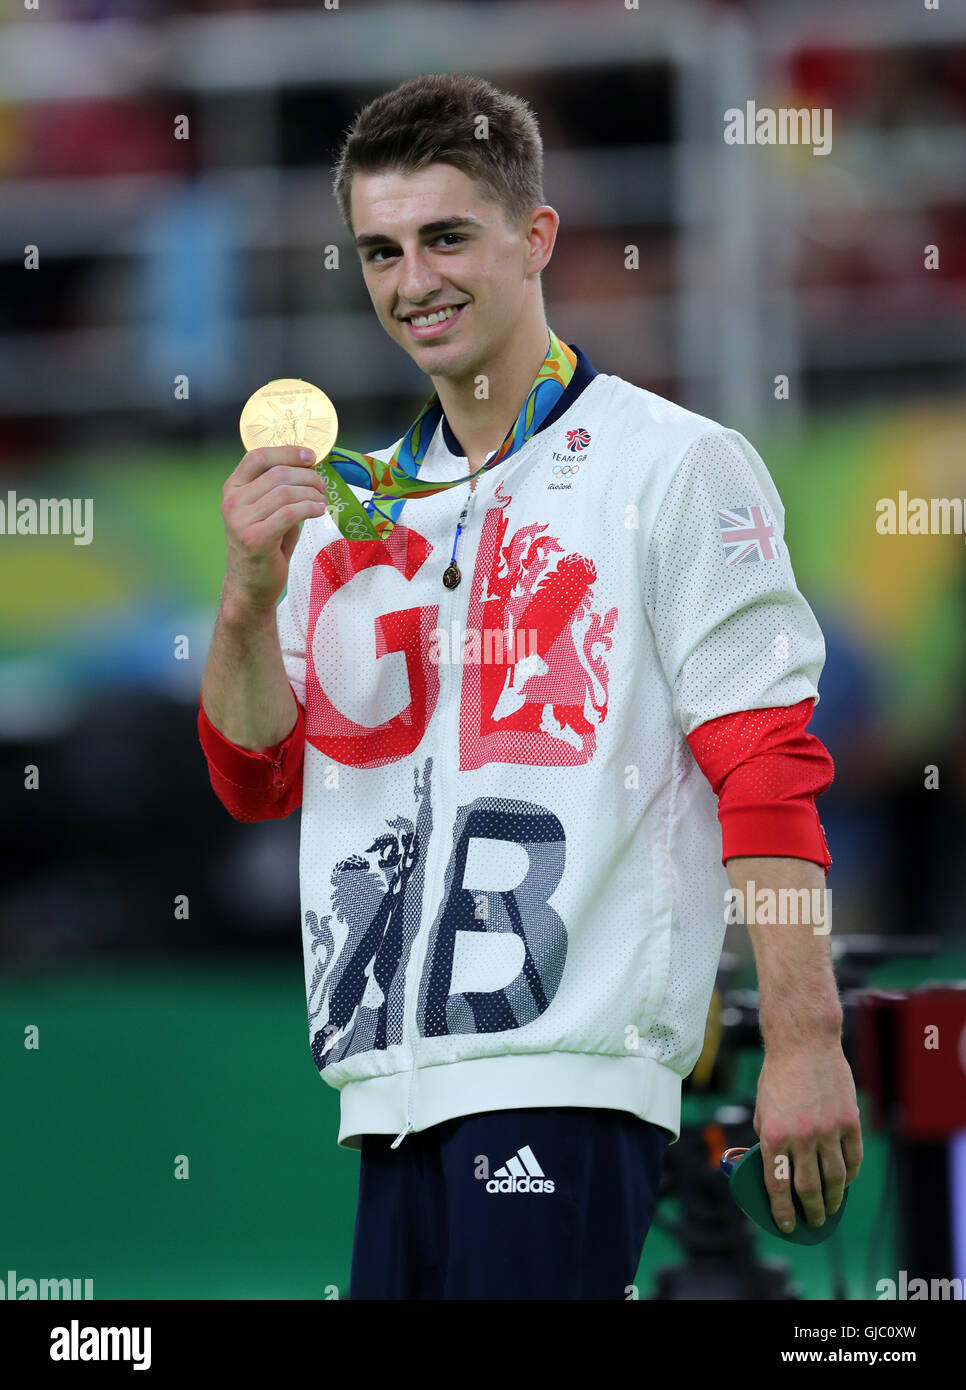 Der Brite Max Whitlock mit seiner Goldmedaille nach den Männern Pauschenpferd Finale am neunten Tag der Olympischen Spiele in Rio, Brasilien. Stockfoto